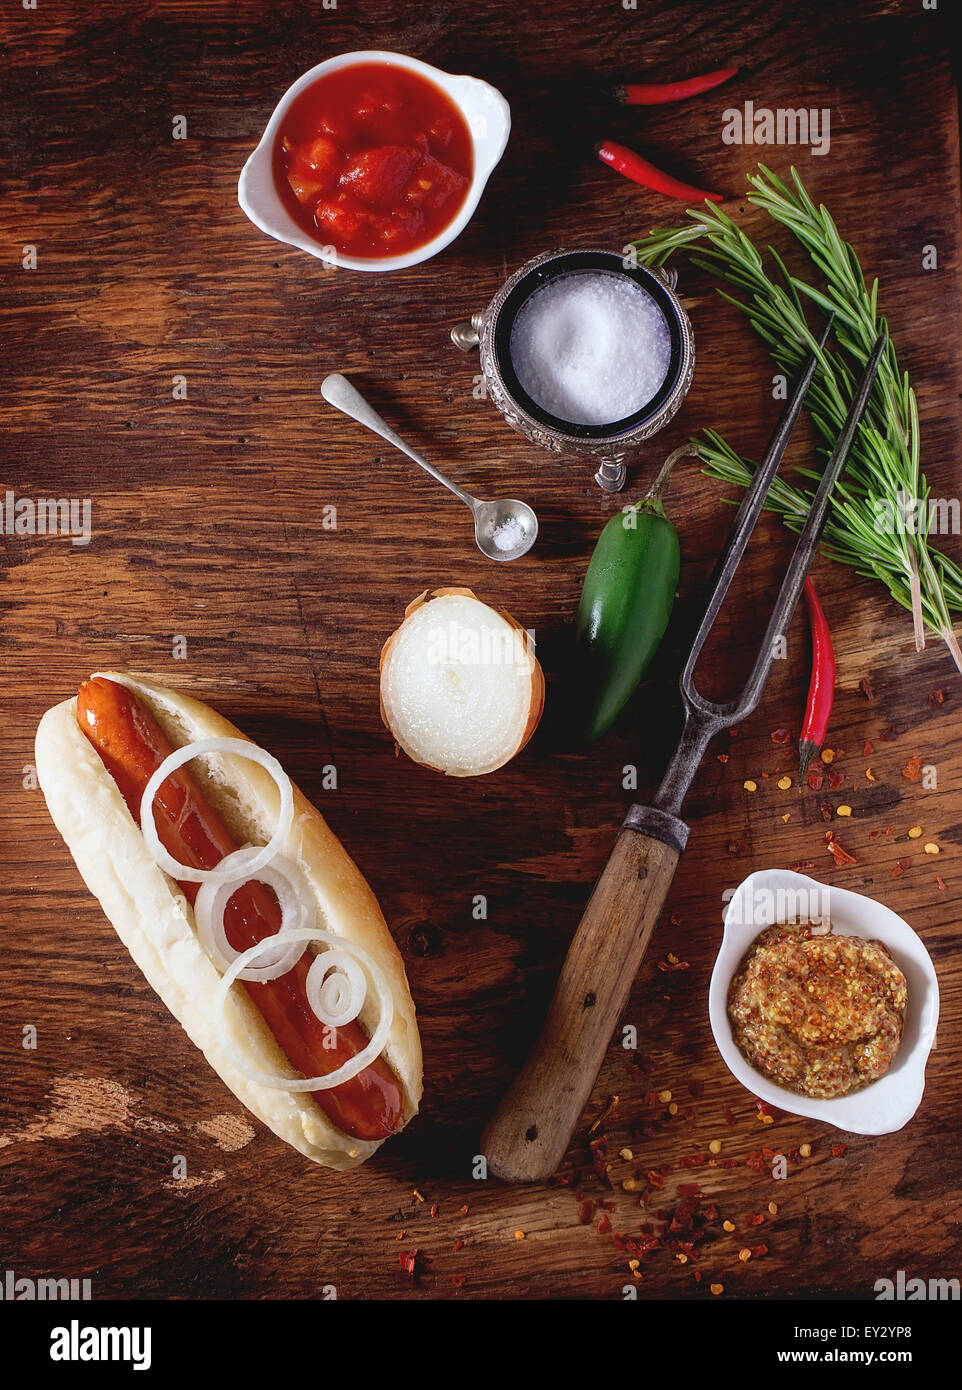 Perro caliente casero con ingredientes mostaza, salsa de tomate, cebolla, pimiento, Romero. Sobre la mesa de madera con carne tenedor y cuchara Foto de stock